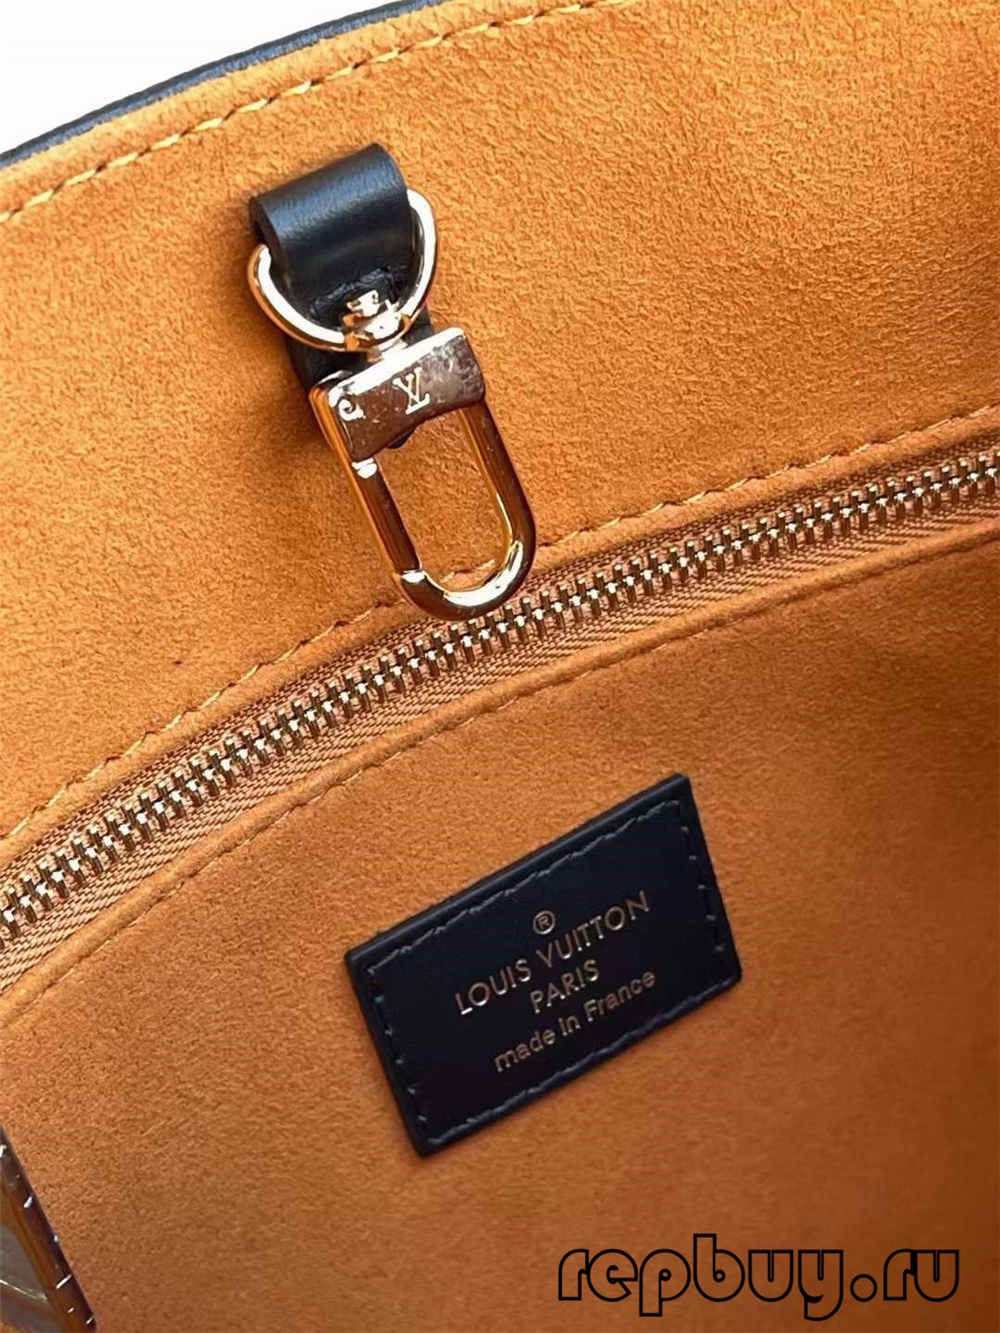 Louis Vuitton ONTHEGO M45653 Replik-Tasche in bester Qualität (2022 aktualisiert)-Beste Qualität gefälschte Louis Vuitton-Taschen Online-Shop, Replik-Designer-Tasche ru